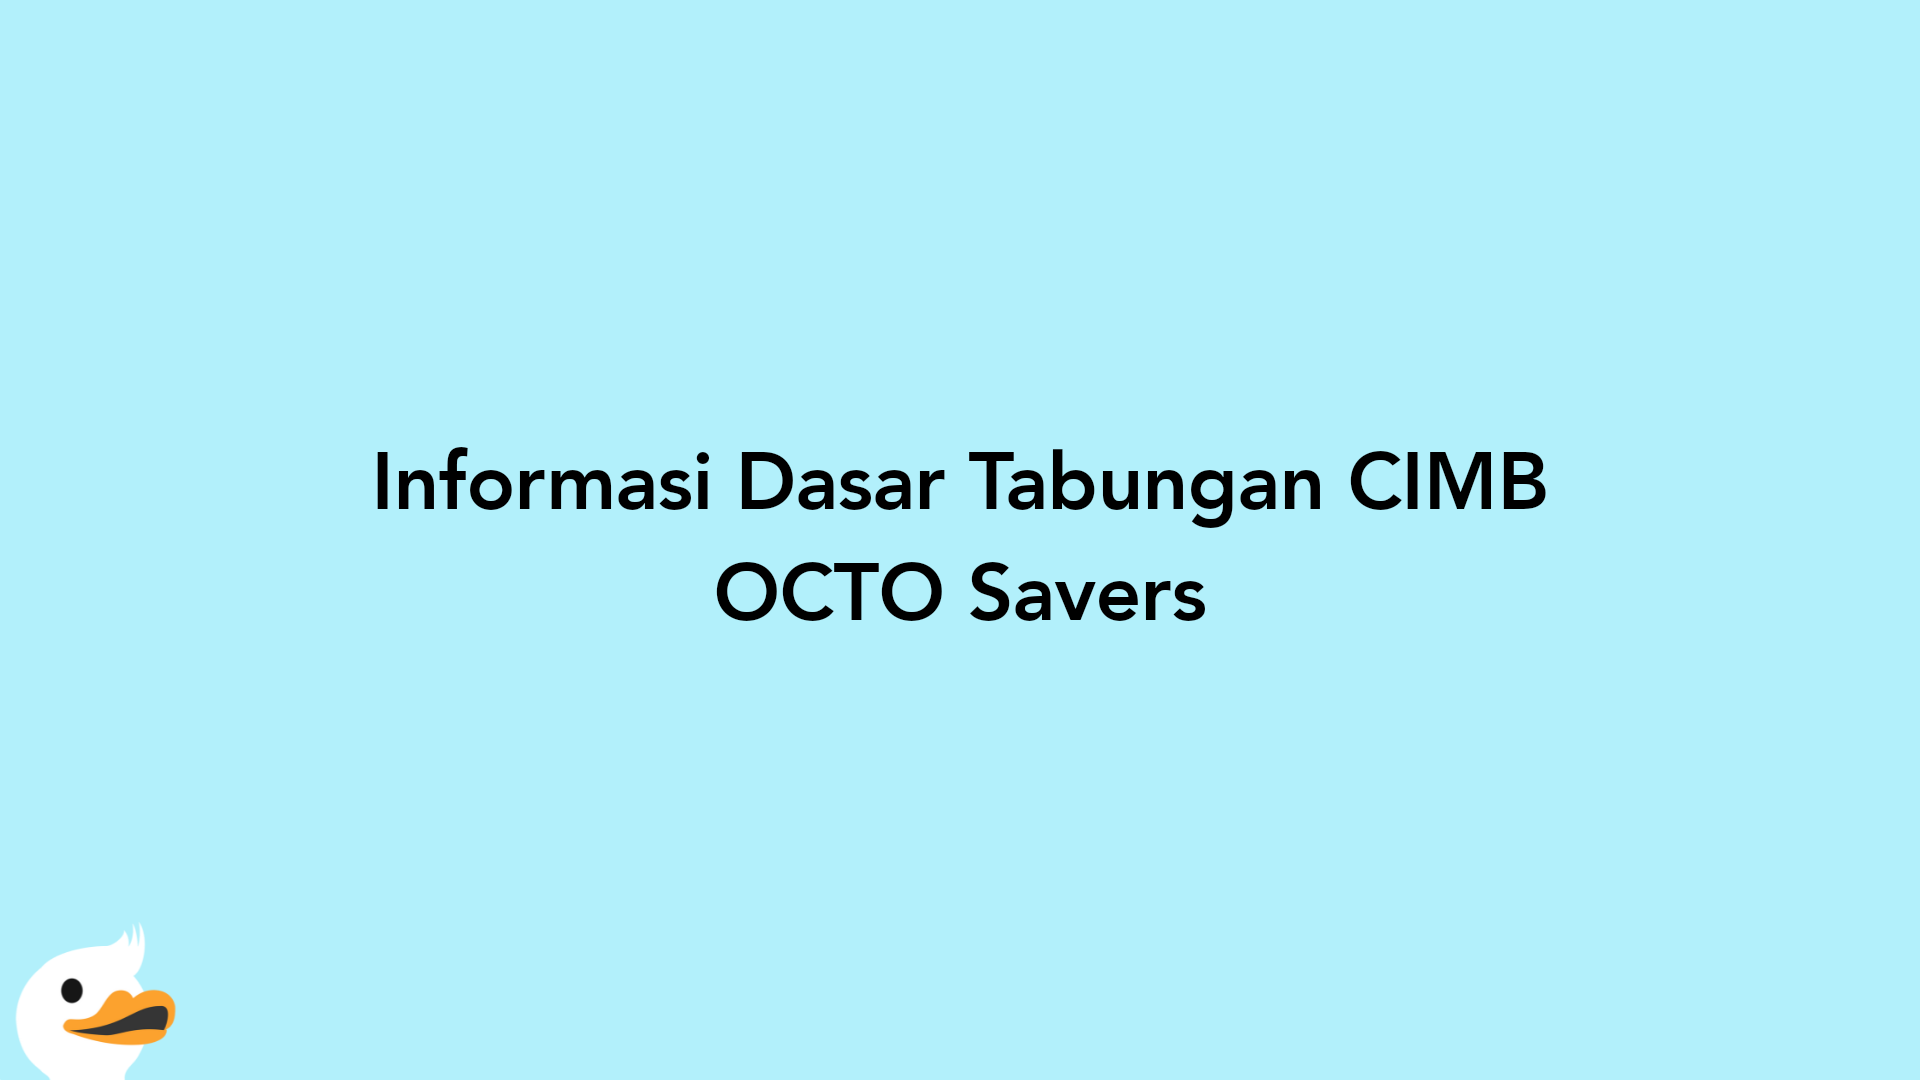 Informasi Dasar Tabungan CIMB OCTO Savers